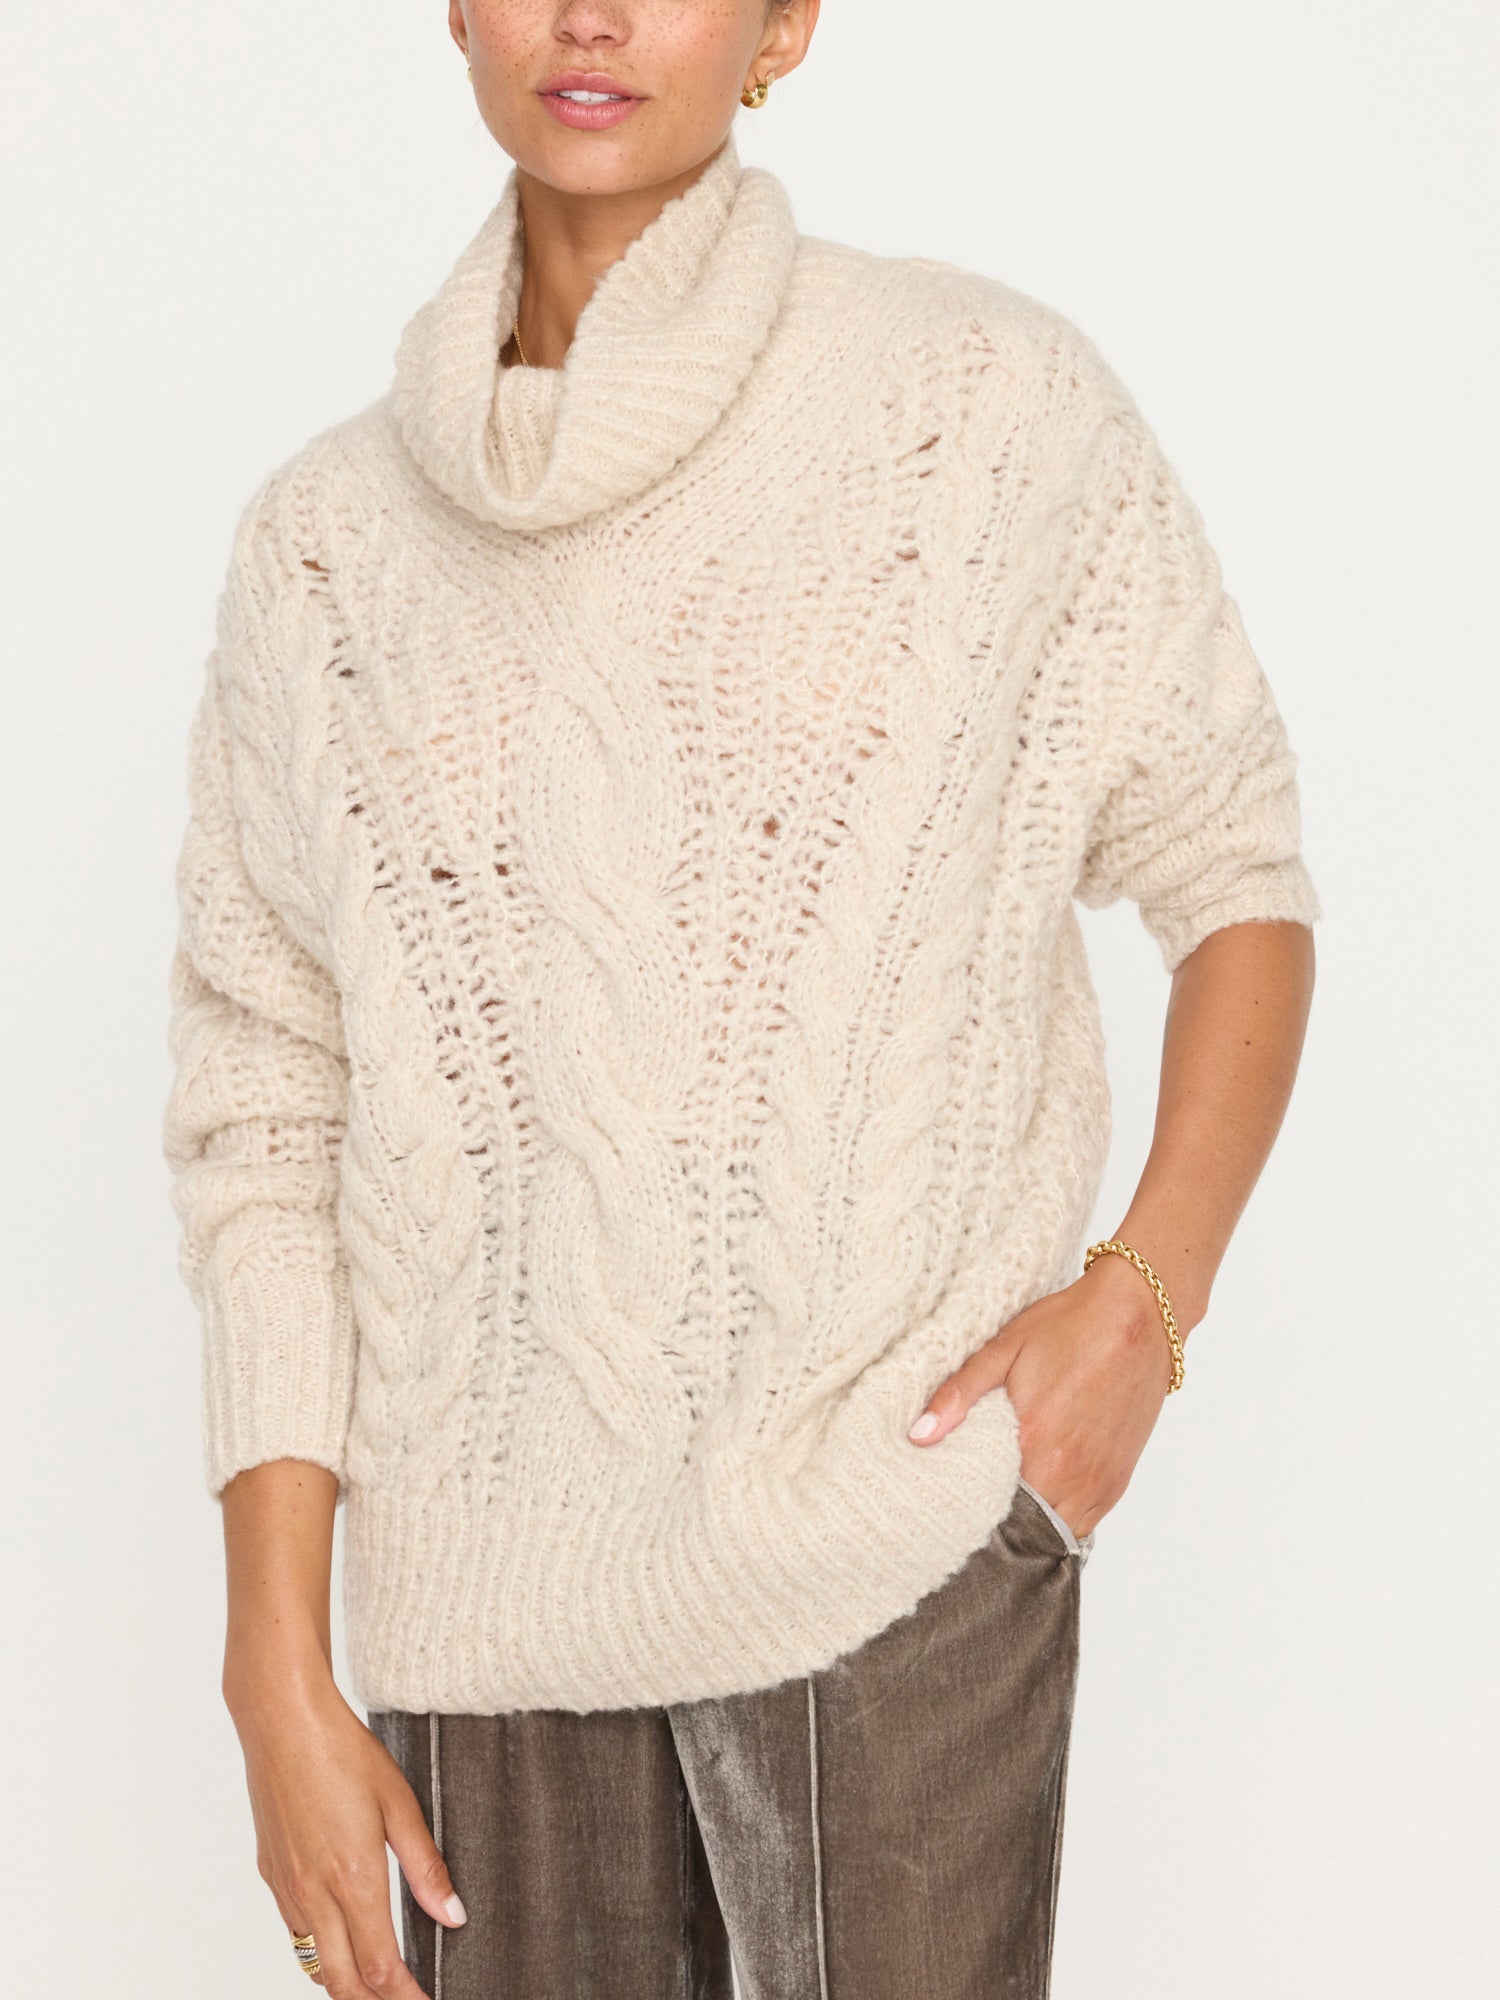 Brochu Walker | Women's Elden Cable Knit Sweater in Oyster Blush Mélange